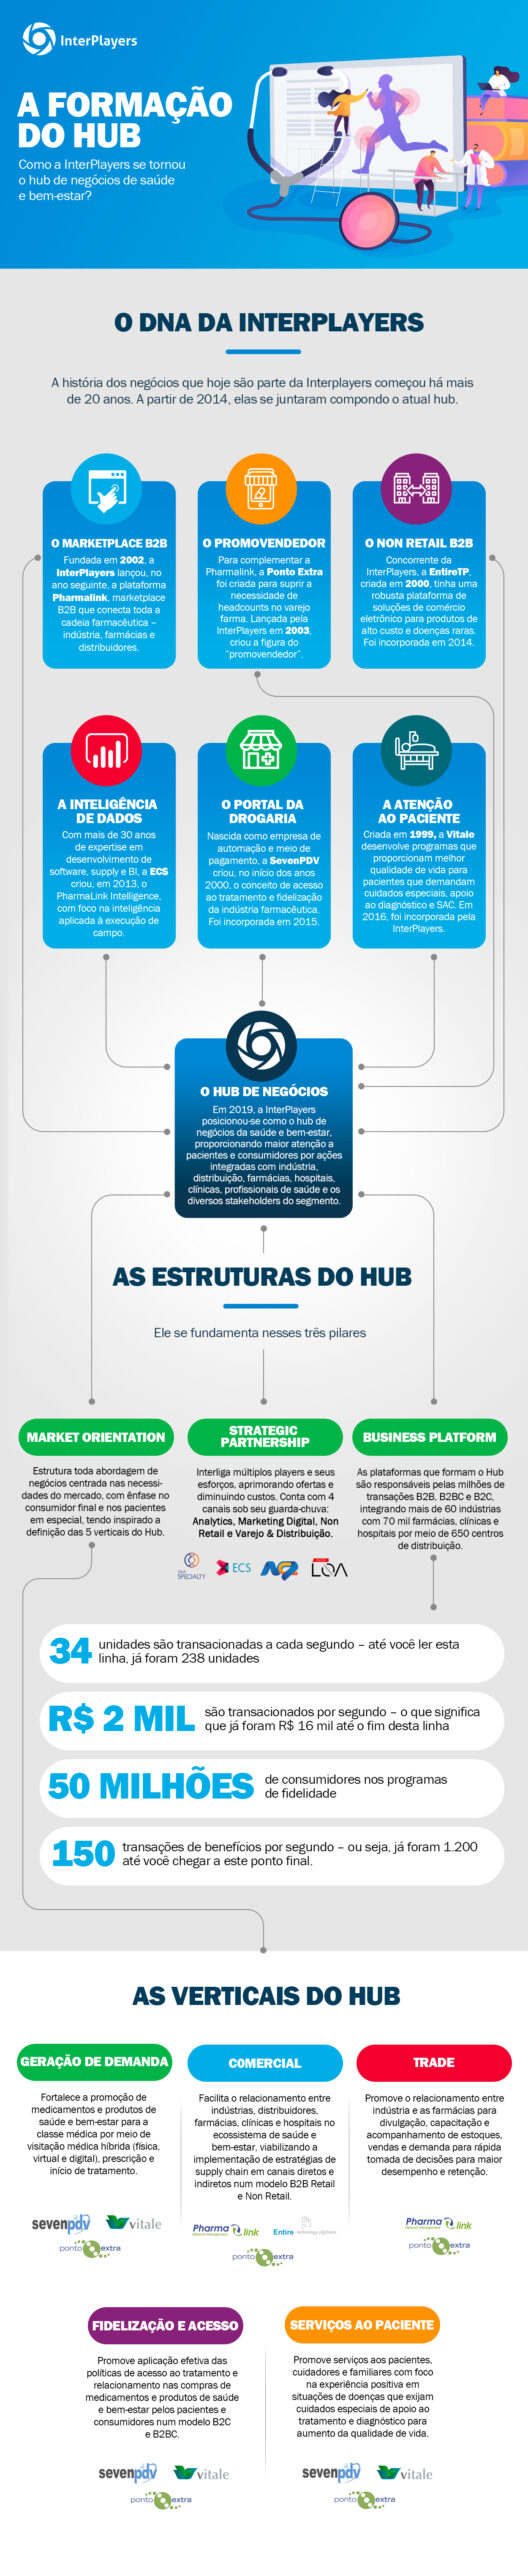 Prudential e Vitality lançam programa de bem-estar inédito no Brasil